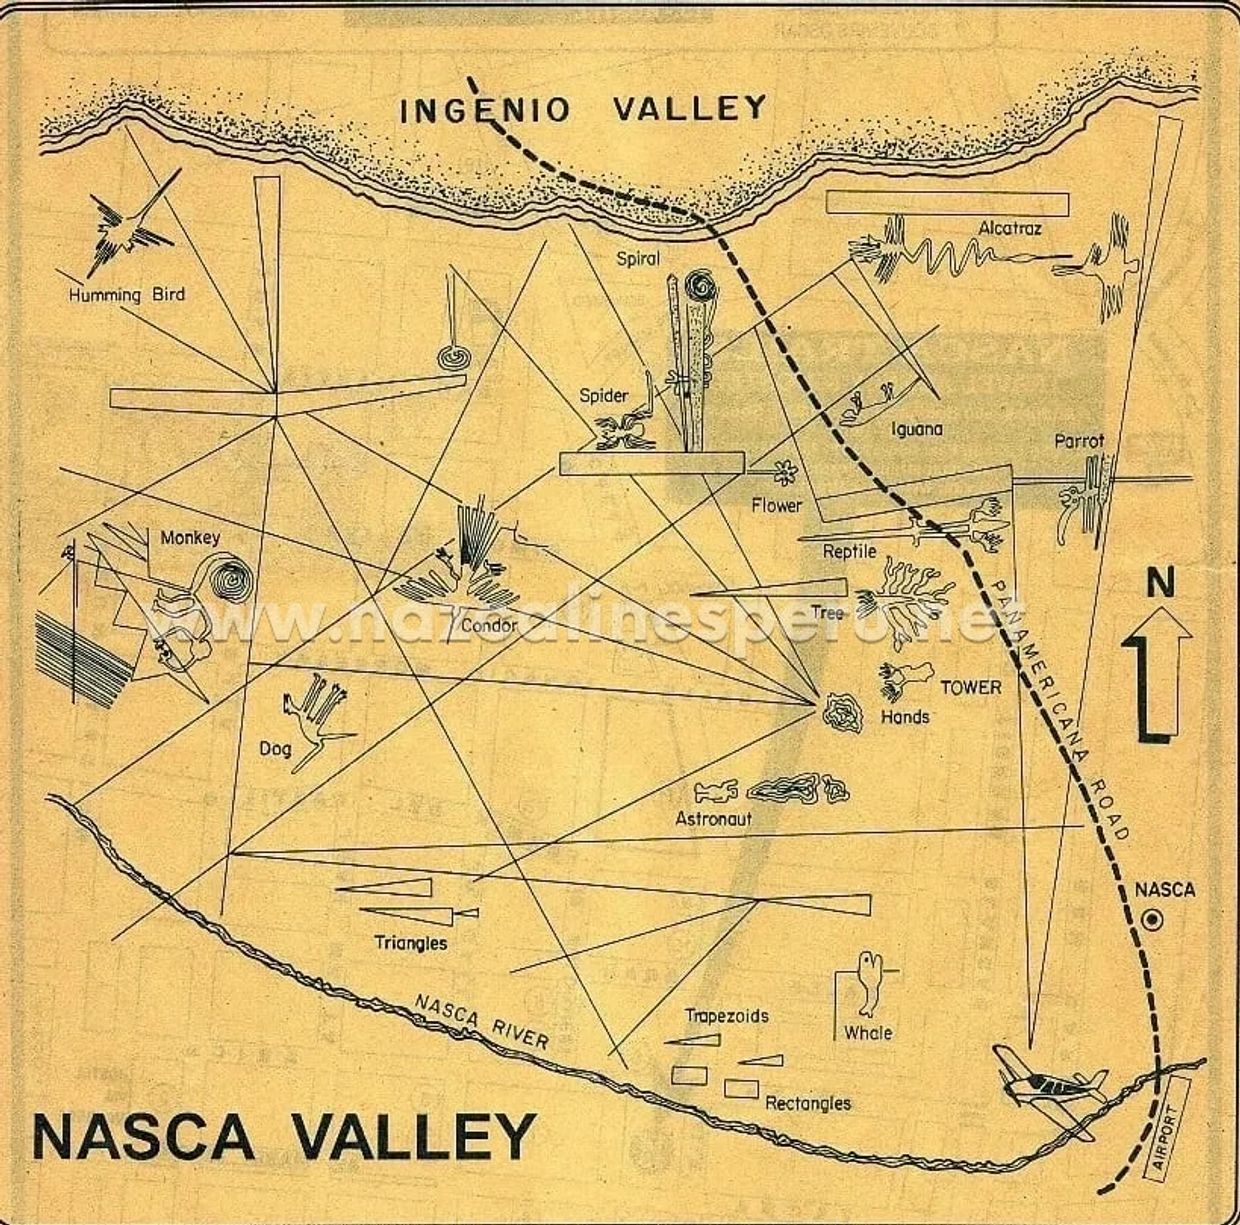 ナスカの地図、壮大な線画の地図、世界の主要人物のフィギュア、ソブレブエロのタンビエンの世界
ナスカの地上絵ツアー 